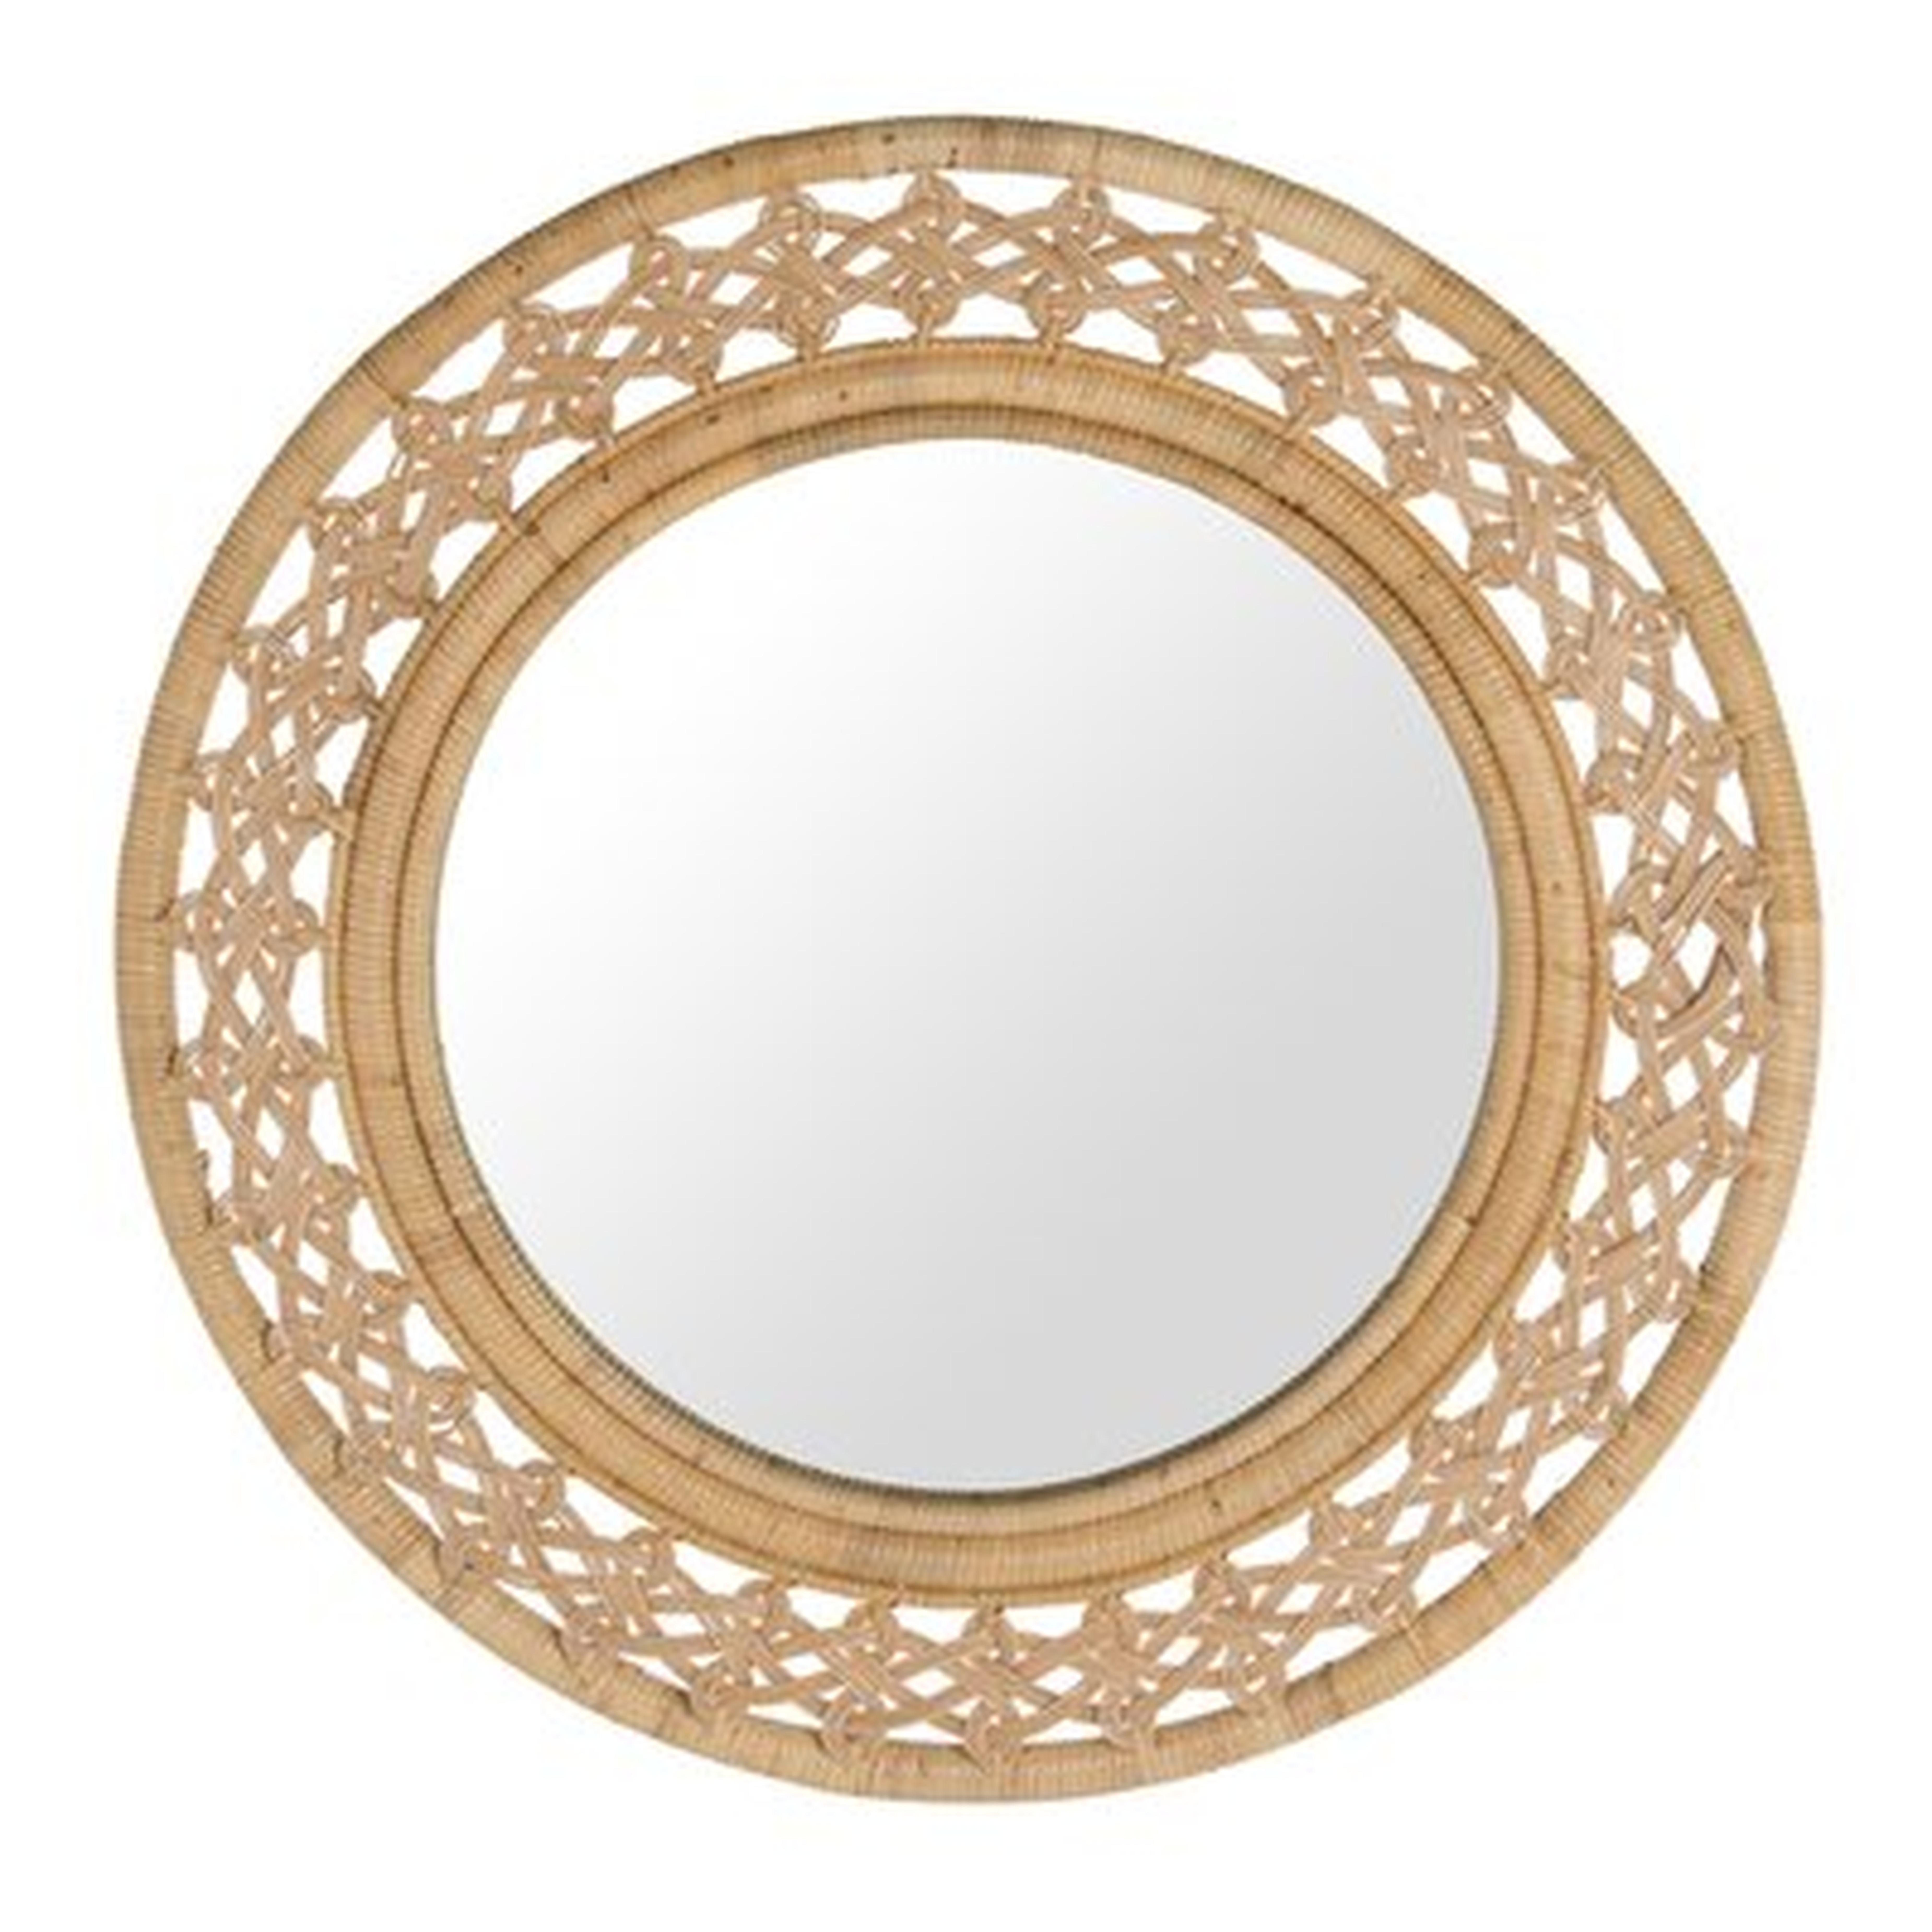 Tulley Round Rattan Braided Decorative Accent Mirror - Wayfair